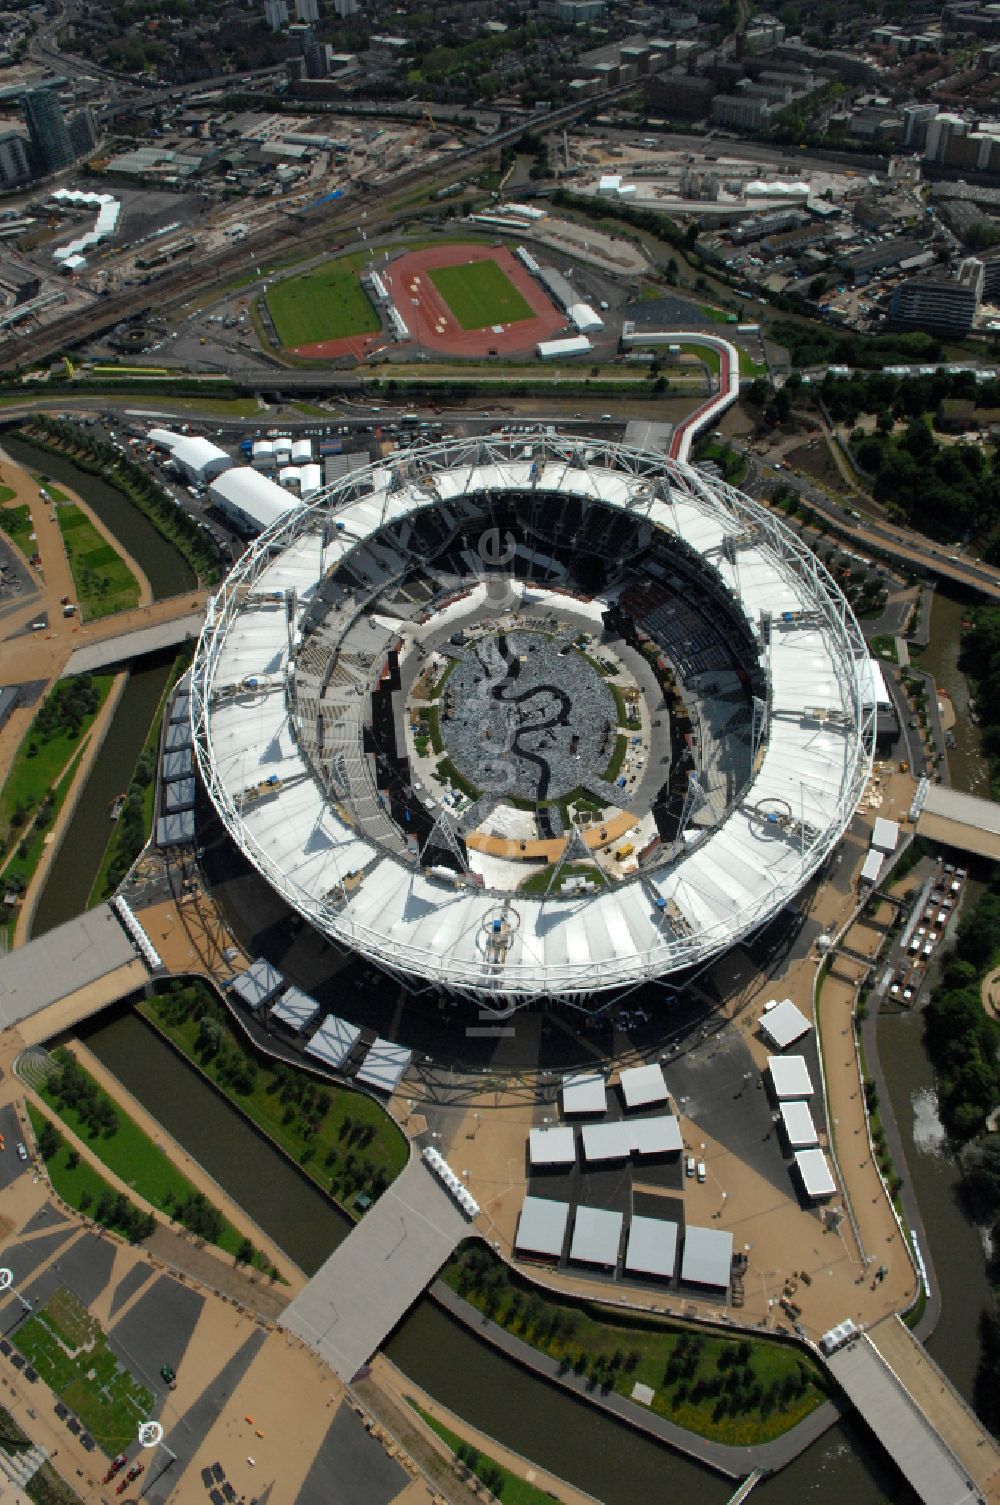 Luftbild London - Sportstätten-Gelände der Arena des Stadion Olympiastadion in London in England, Vereinigtes Königreich